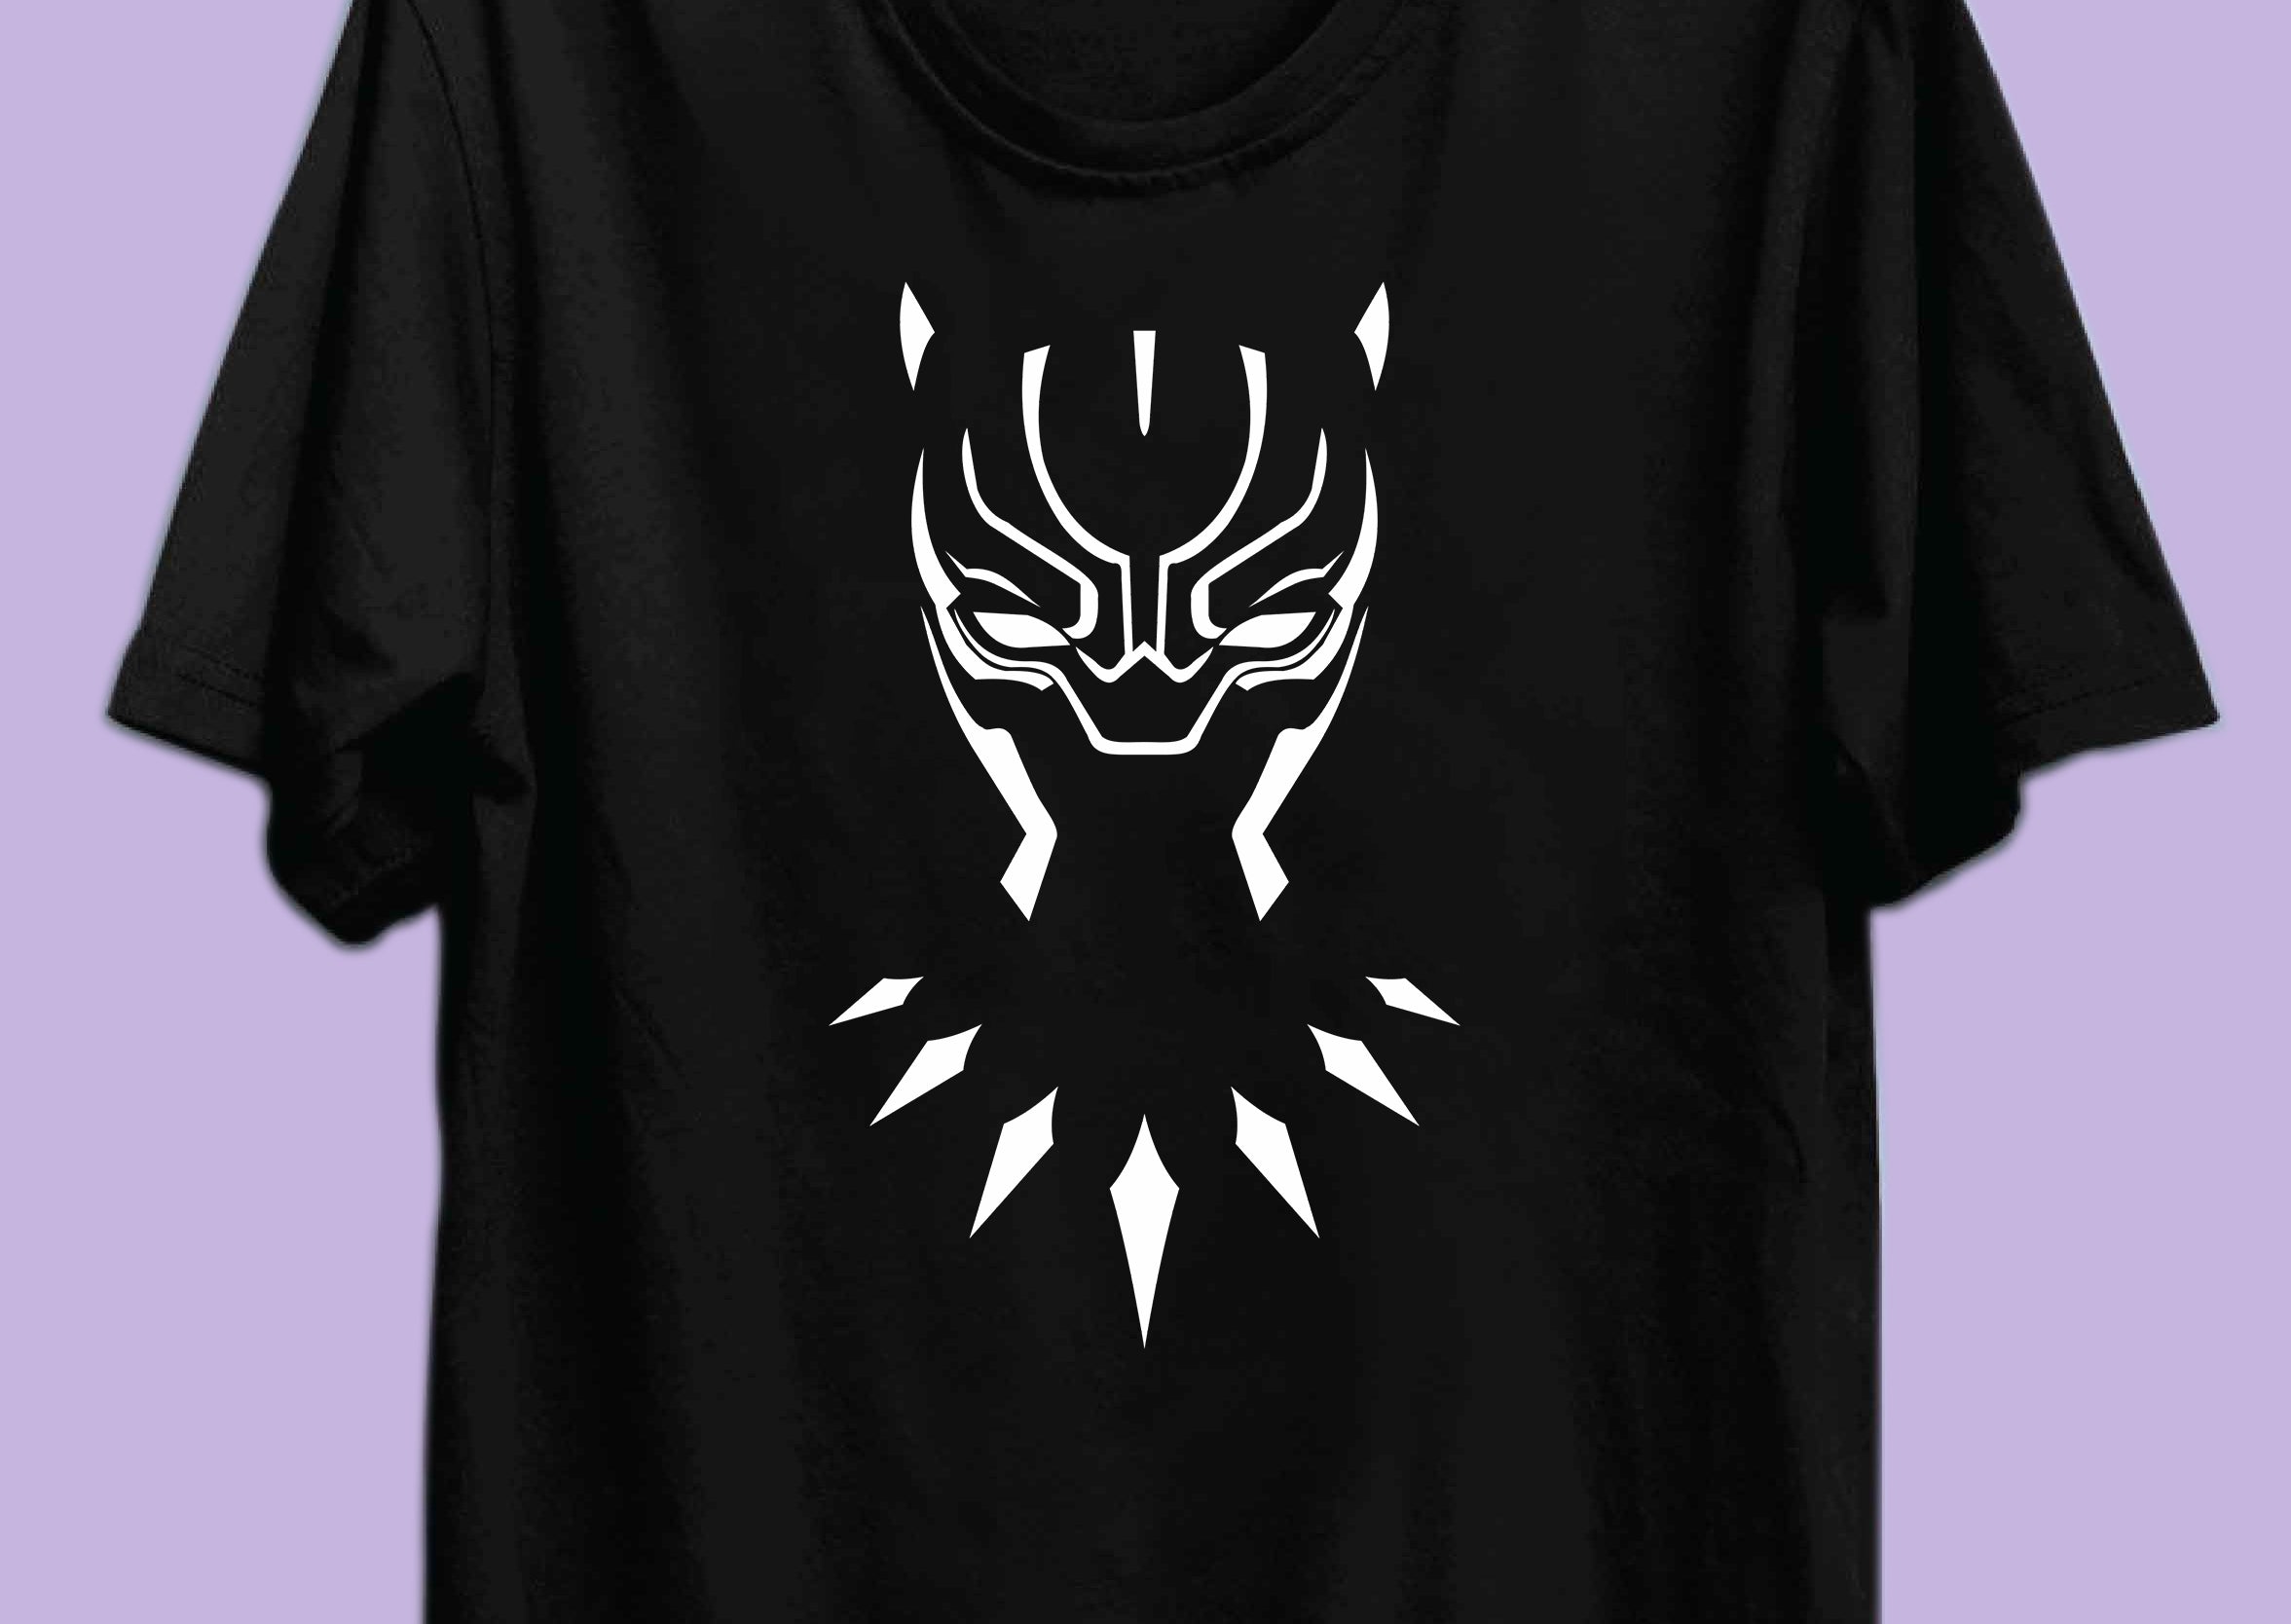 Black Panther Reactr Tshirts For Men - Eyewearlabs